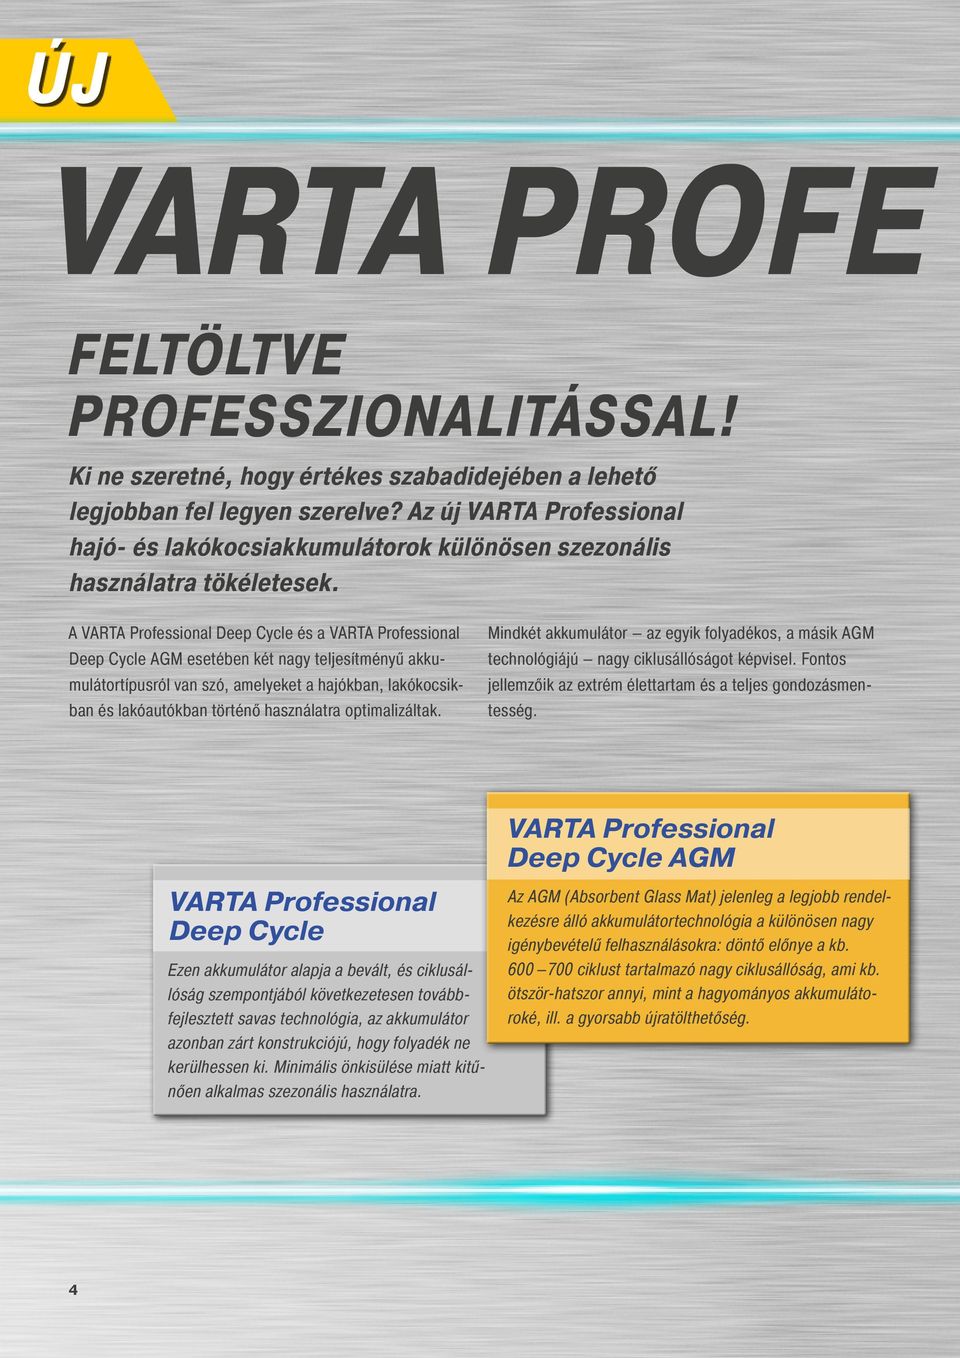 A VARTA Professional Deep Cycle és a VARTA Professional Deep Cycle AGM esetében két nagy teljesítményű akkumulátortípusról van szó, amelyeket a hajókban, lakókocsikban és lakóautókban történő